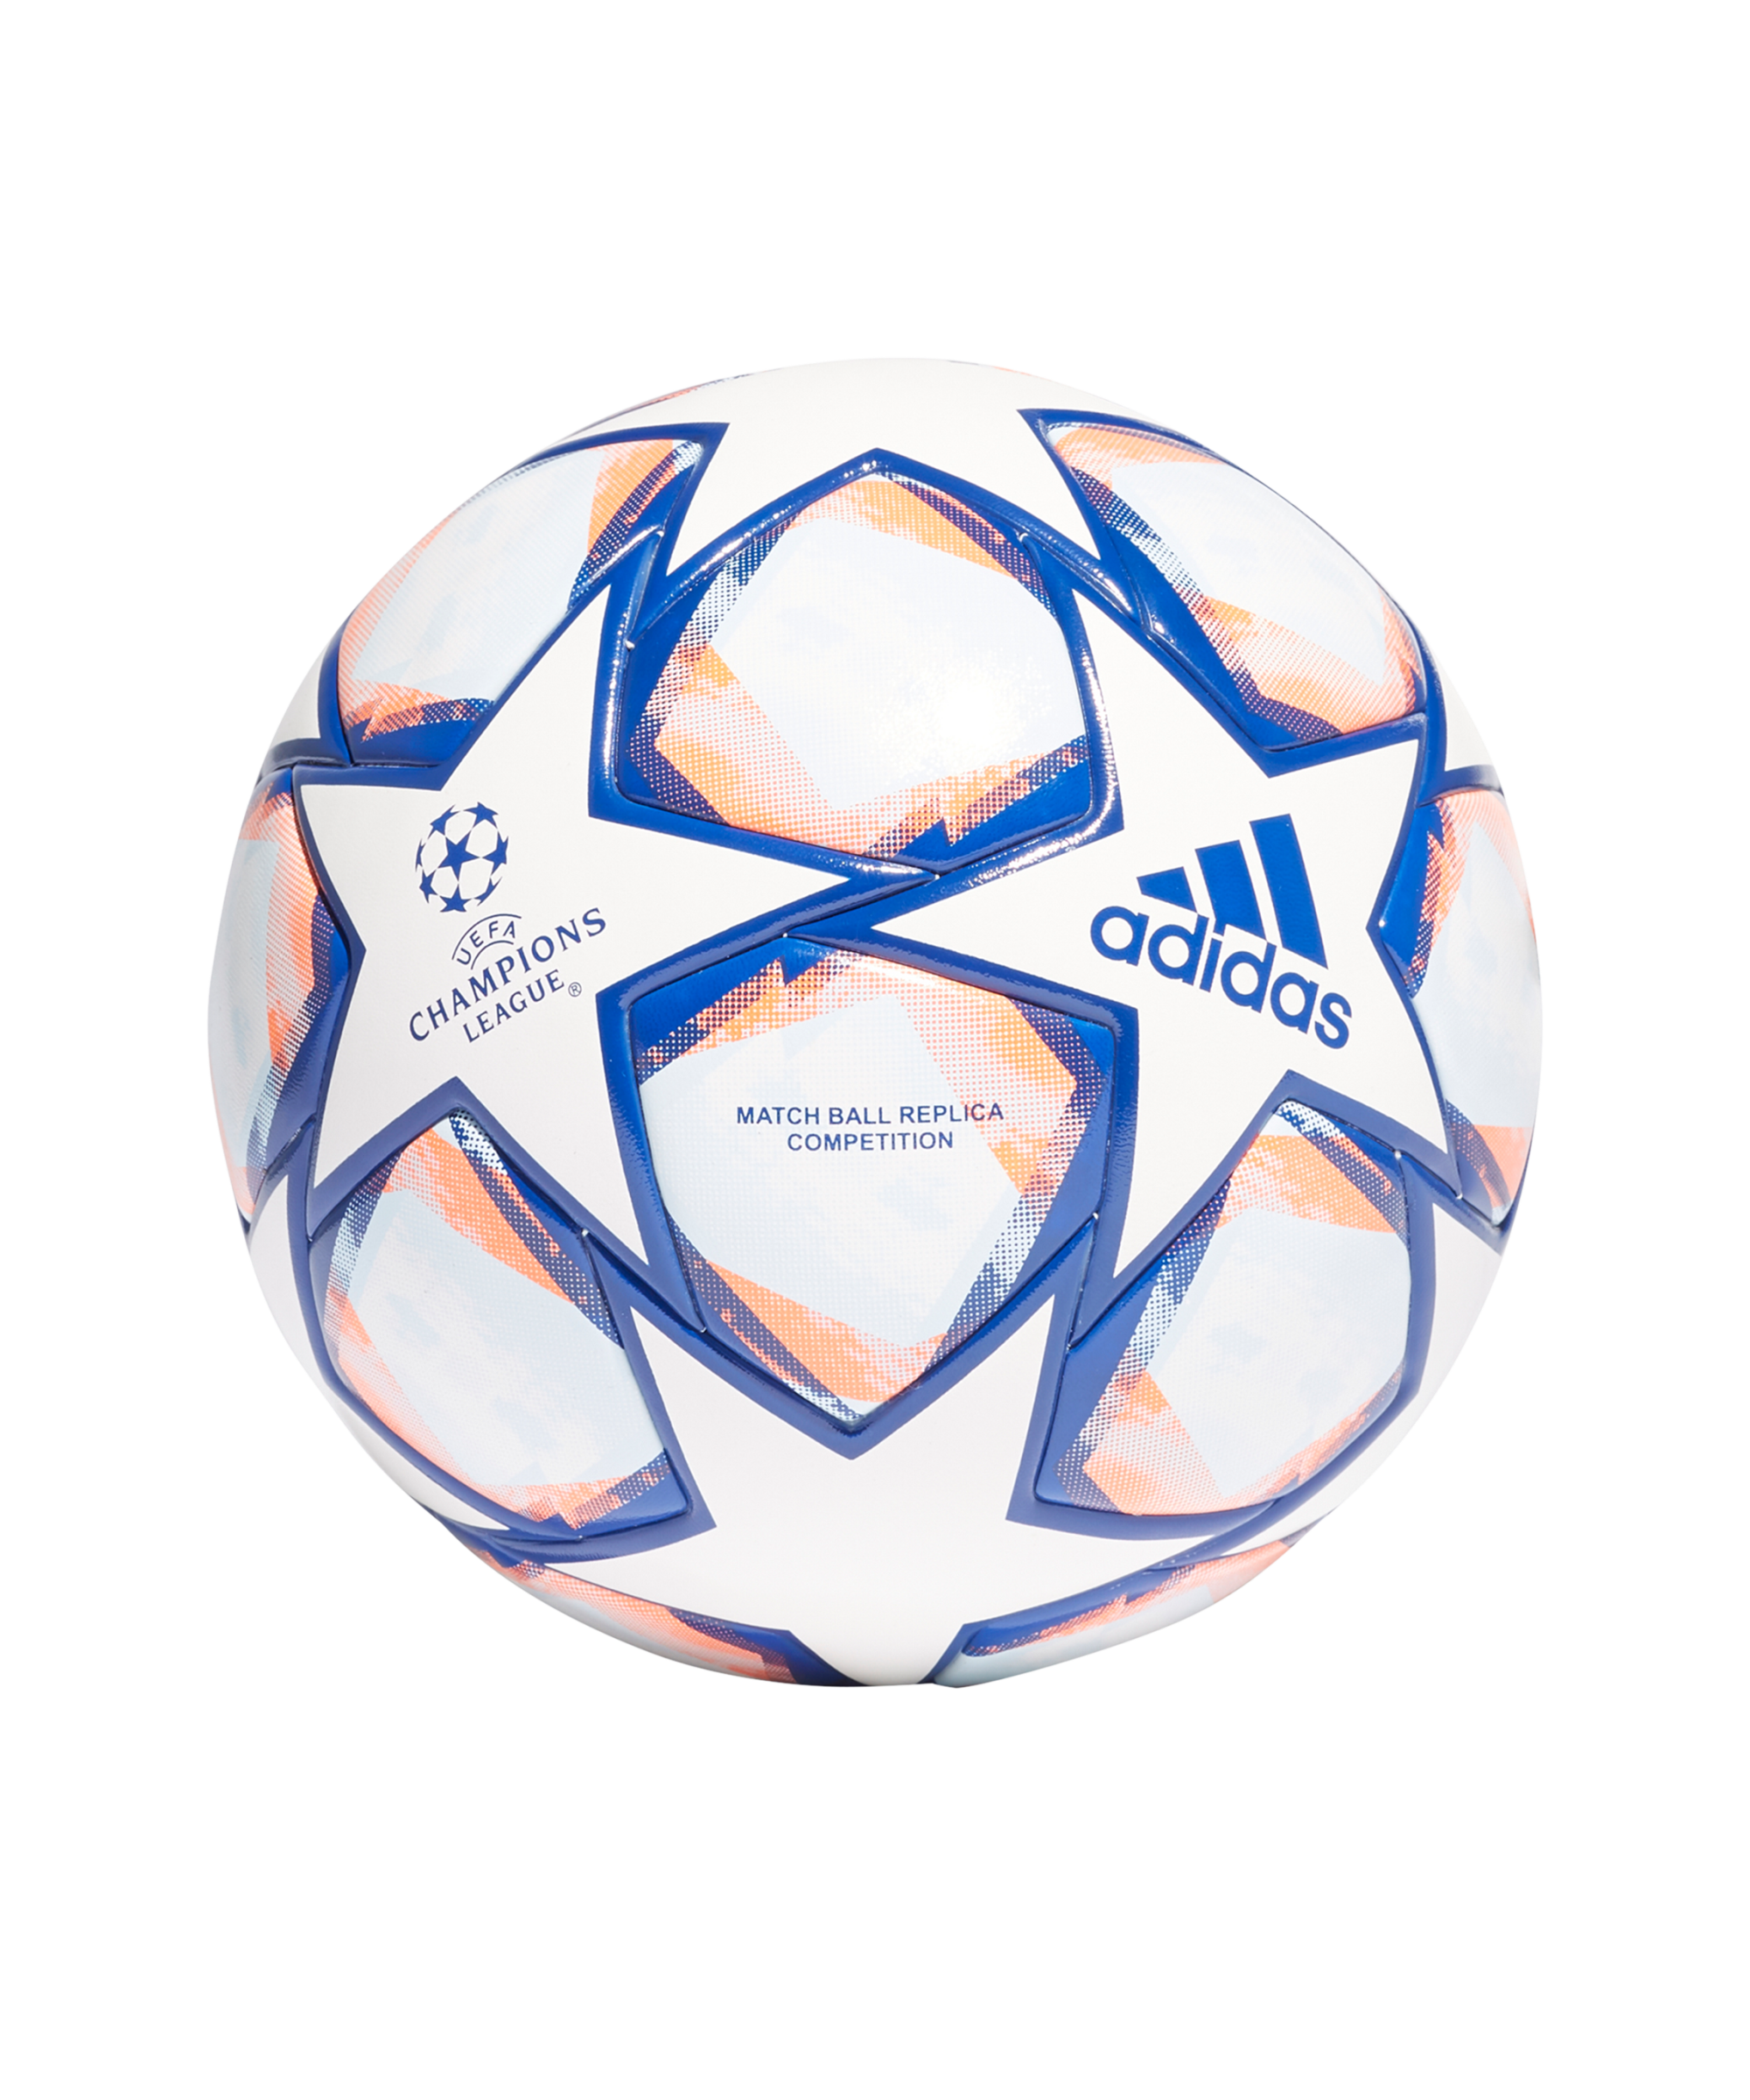 Decimal Escuela de posgrado Relativamente adidas Champions League Finale COM Matchball - White